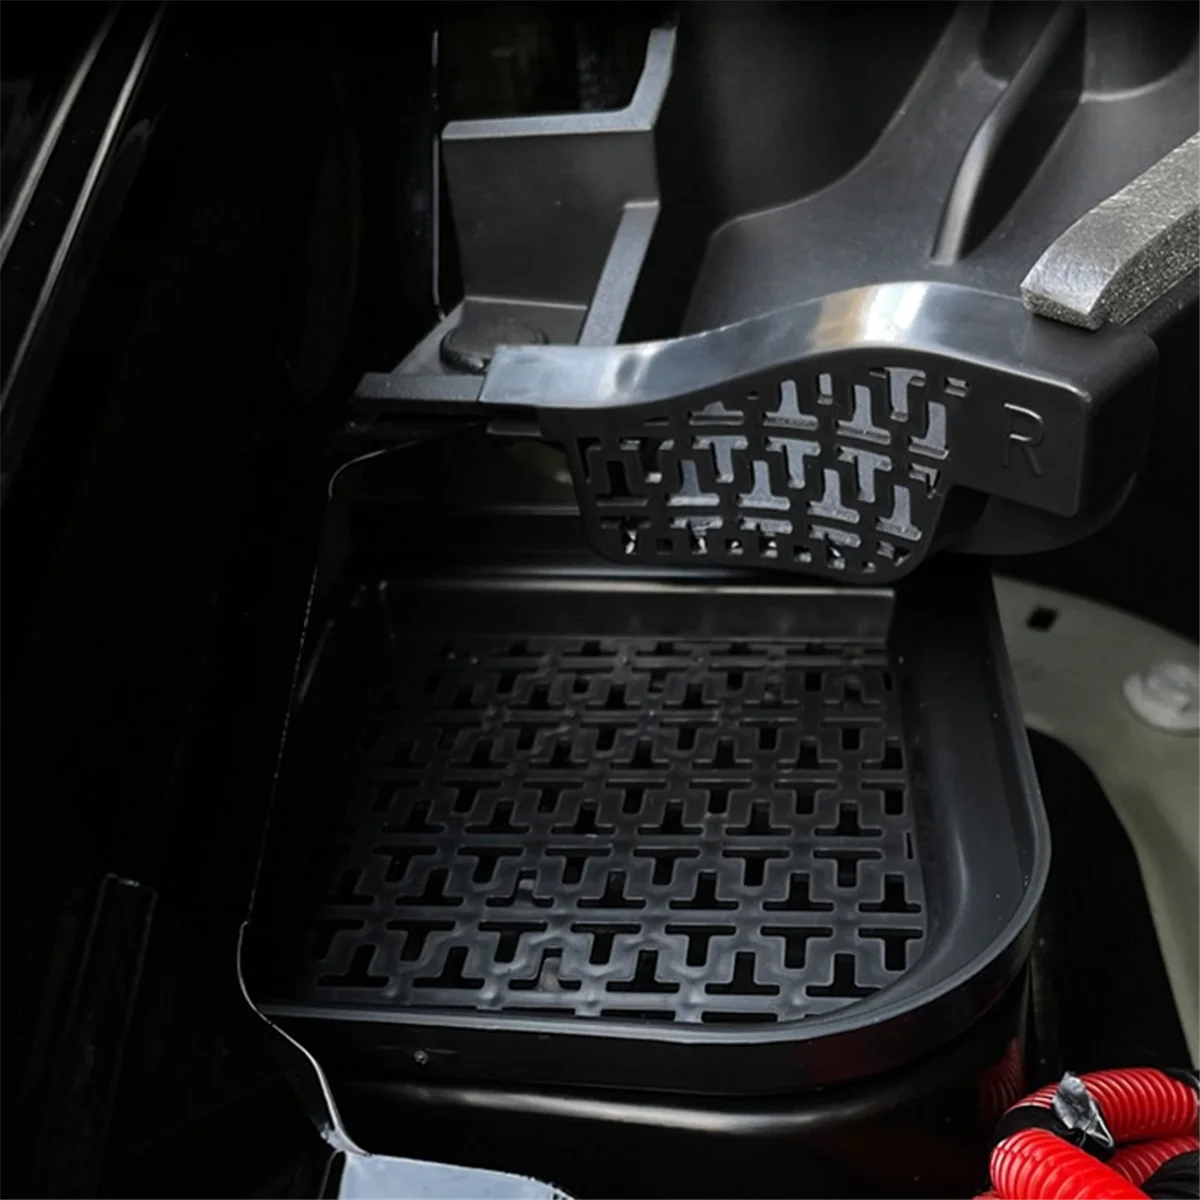  Фильтр мусора для Tesla Model Y Передний багажник Водонаправляющий канал Защитная сетчатая крышка Фильтр утечки Канавка против засорения - 3